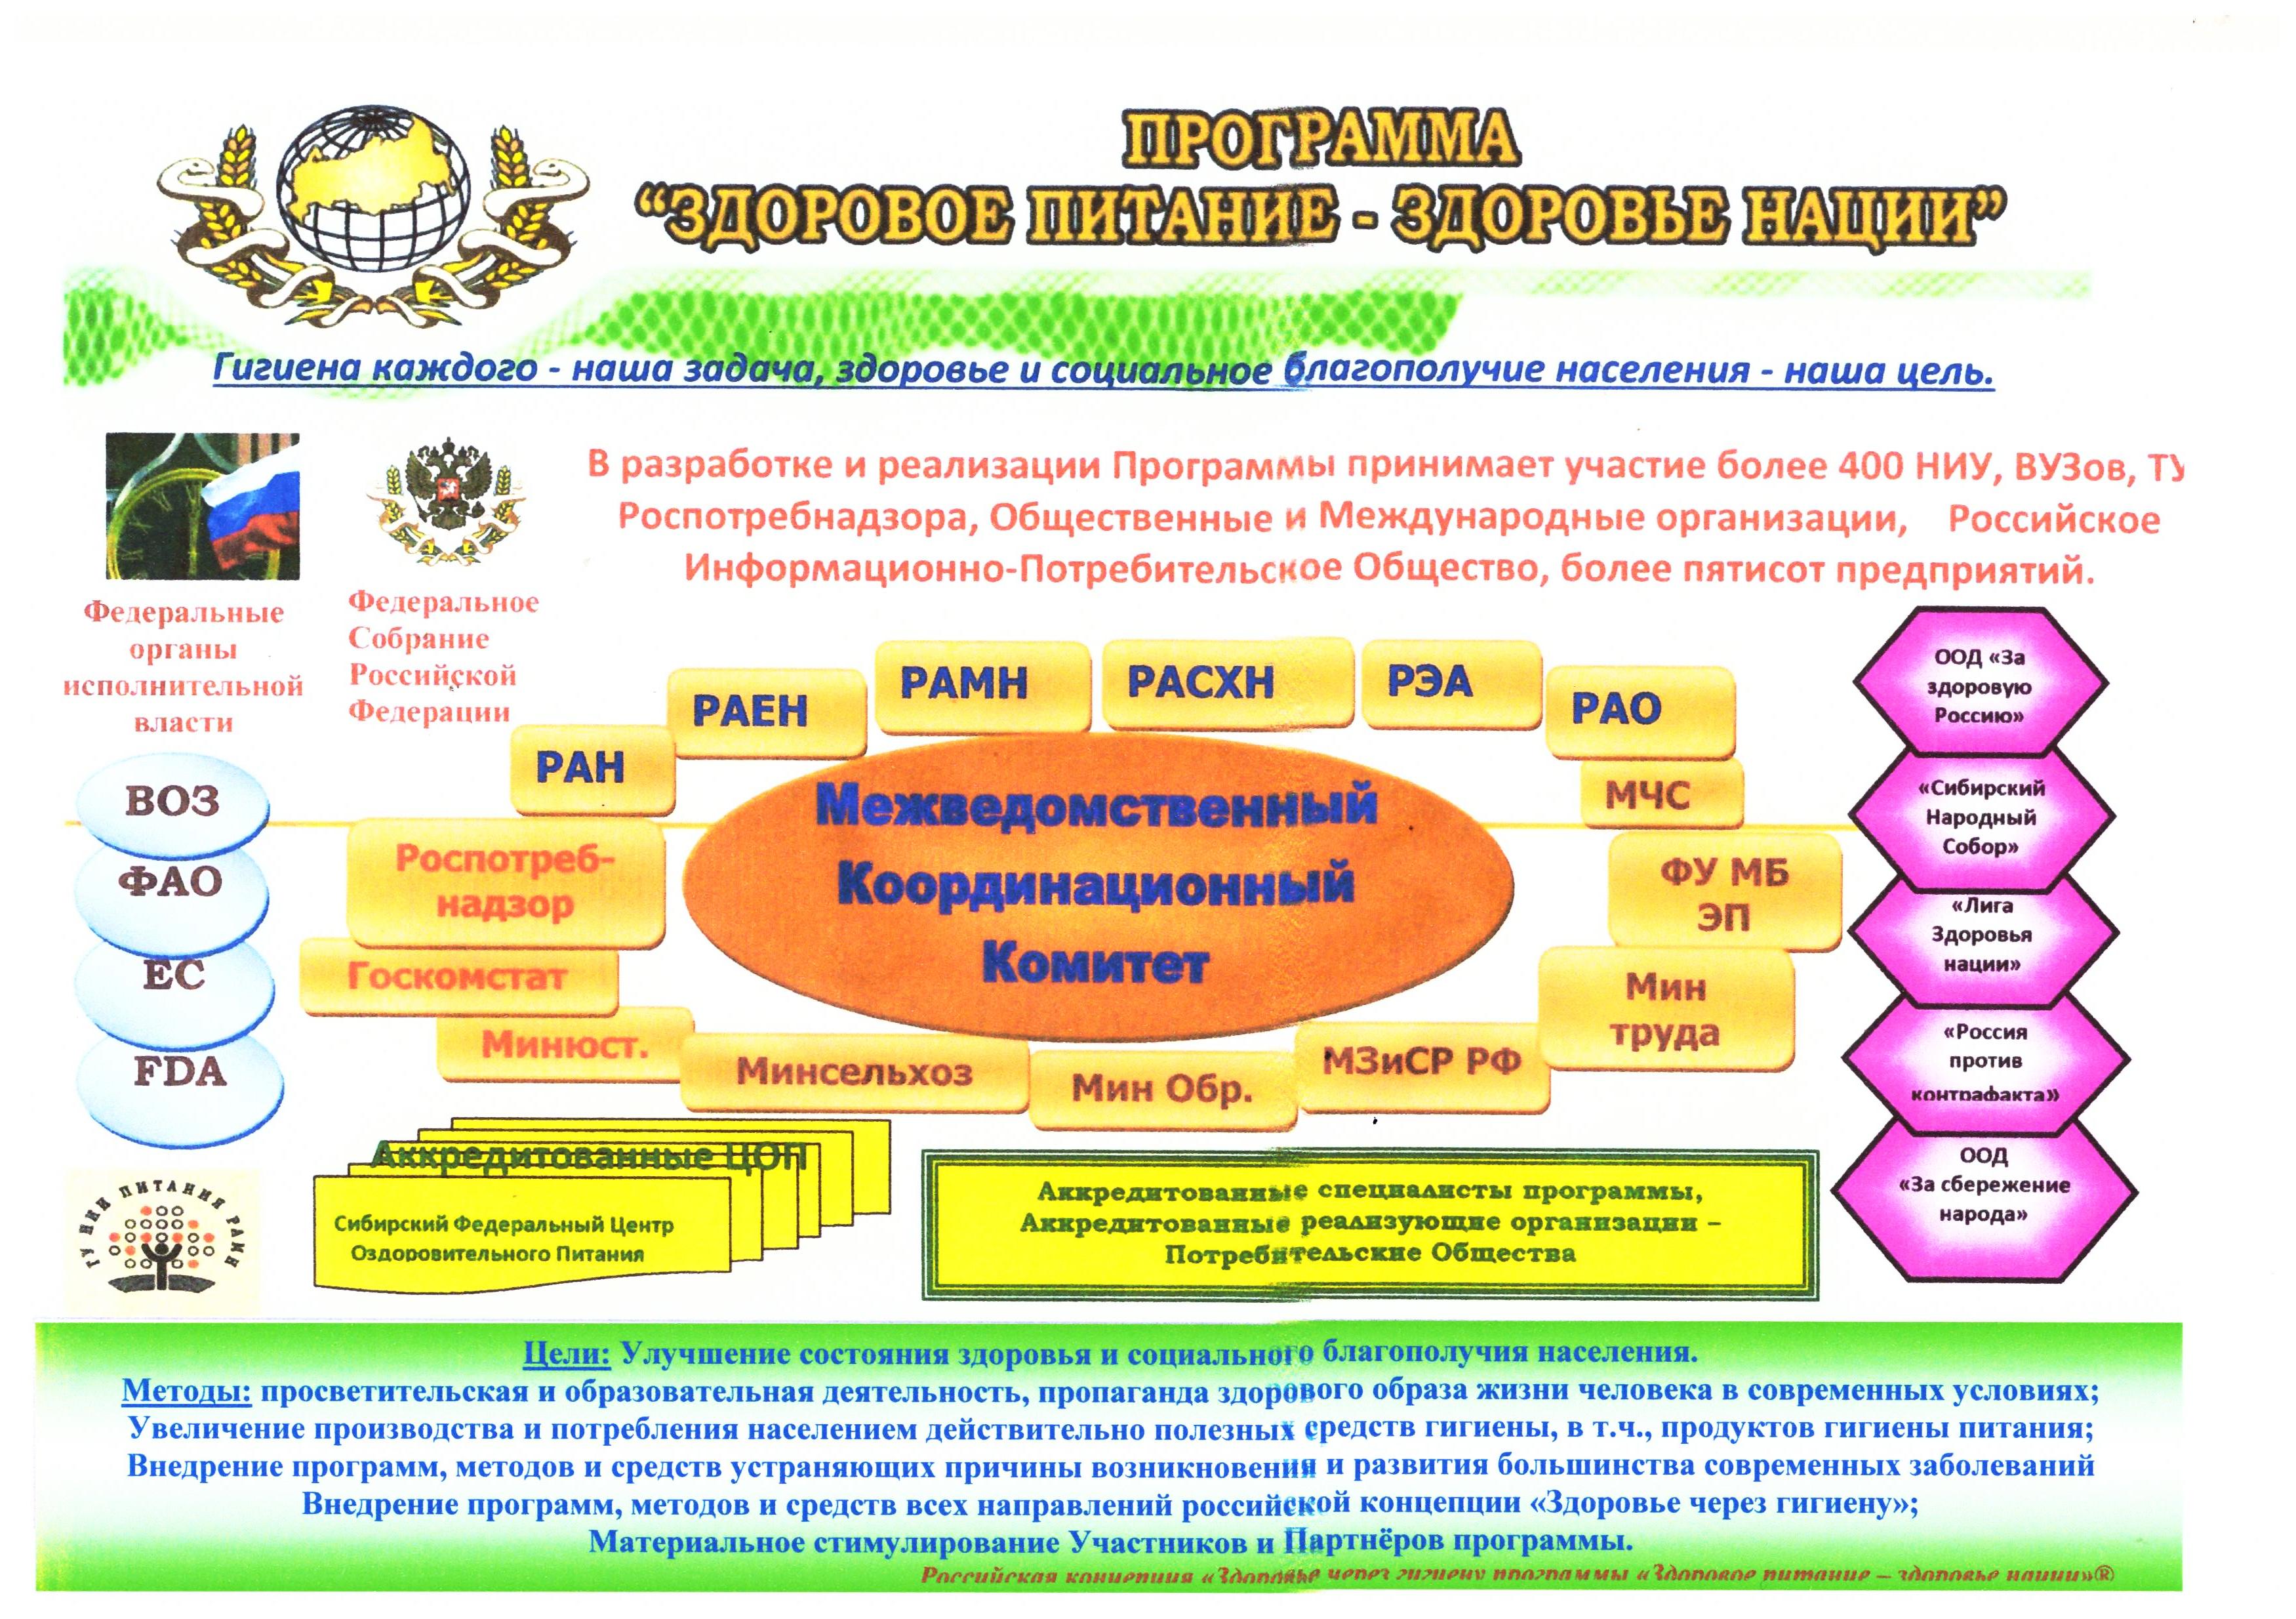 Концепция  «Региональная политика  Республики Татарстан  в области  здорового питания населения»  на период до 2020 года.